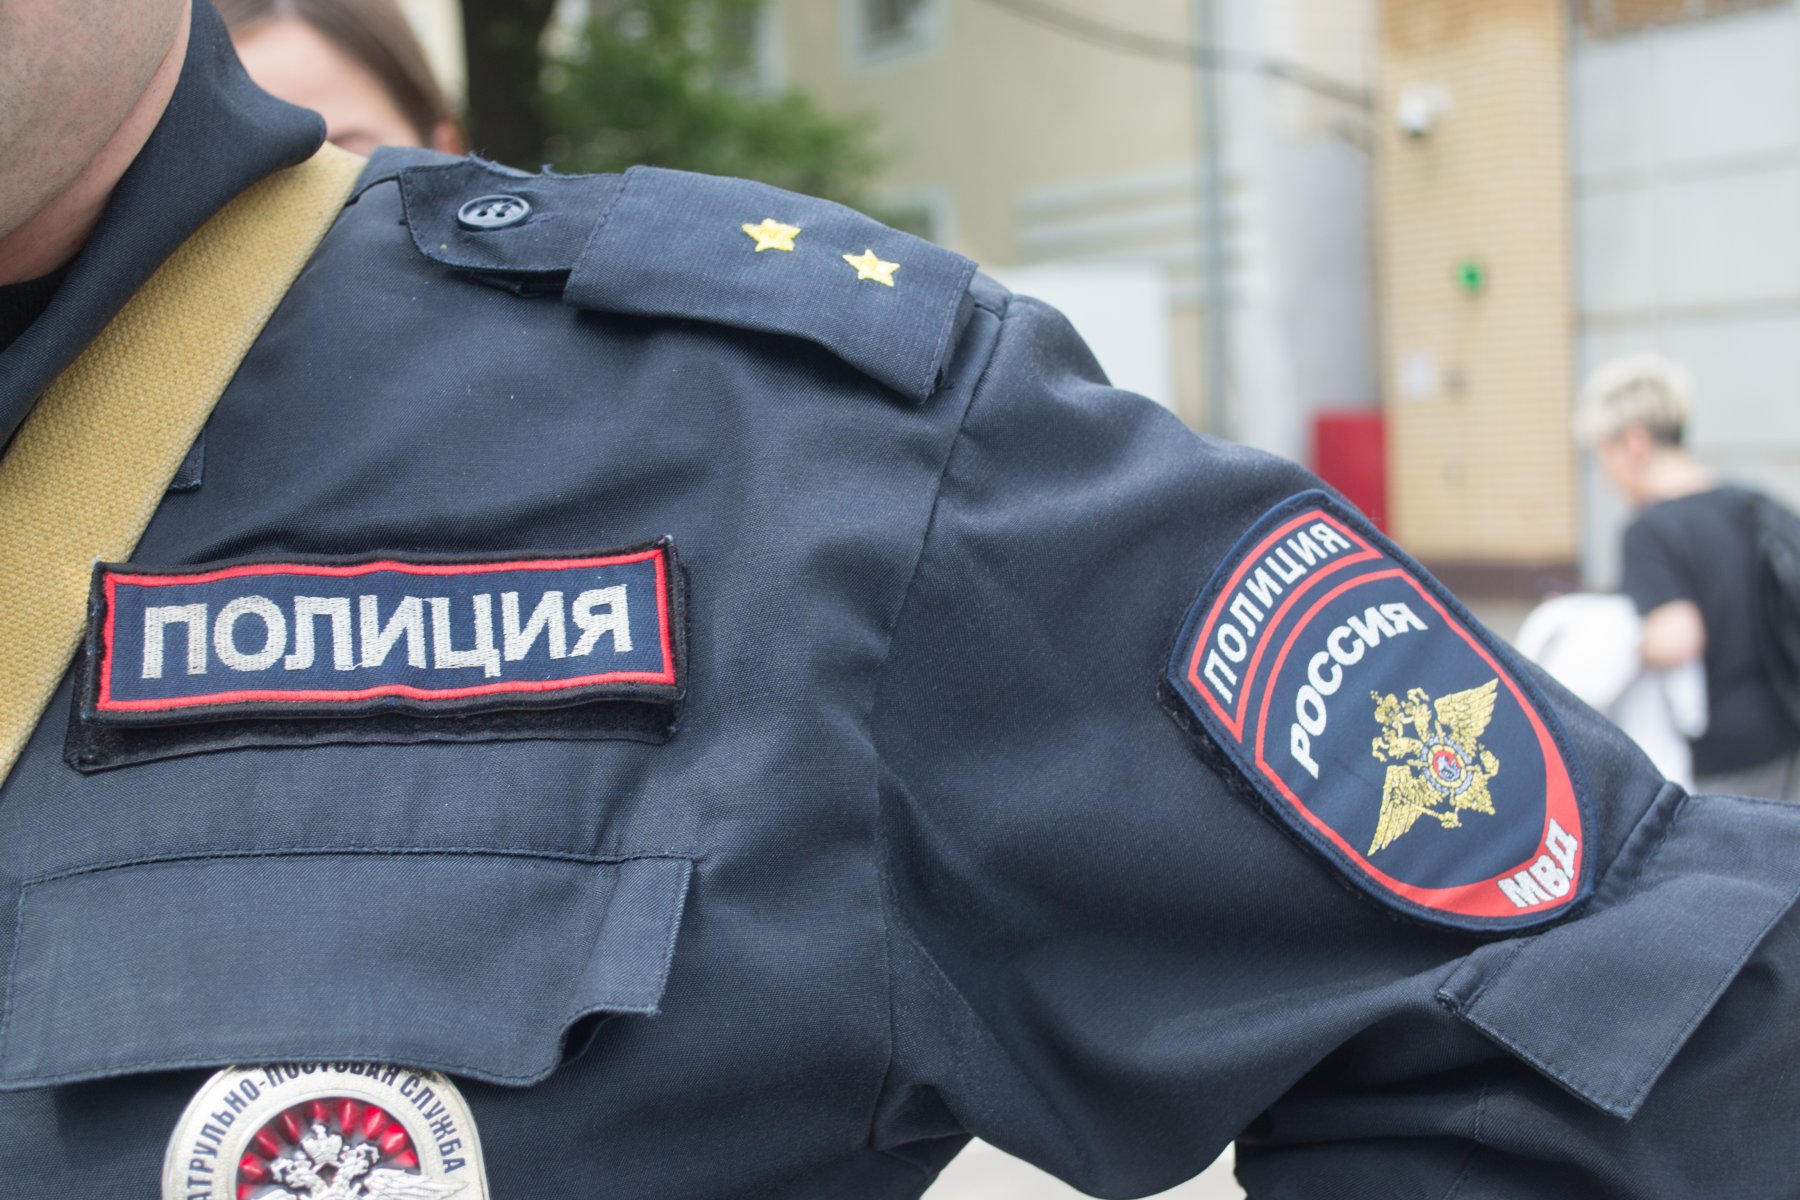 Целый арсенал оружия обнаружили дома у 51-летнего жителя Чехова